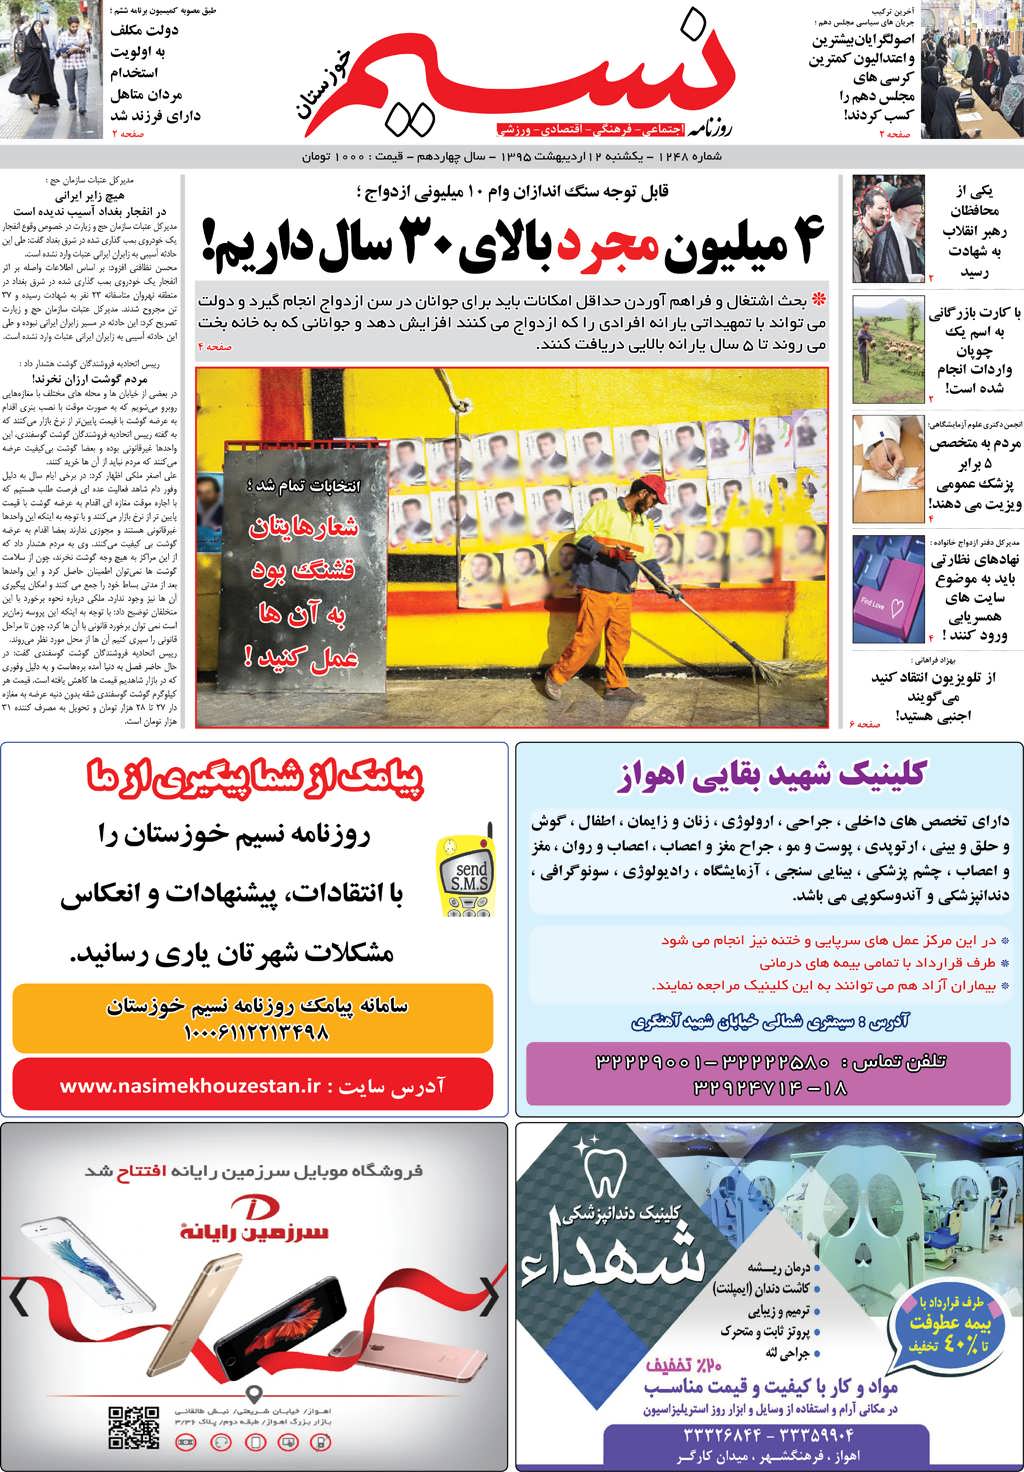 صفحه اصلی روزنامه نسیم شماره 1248